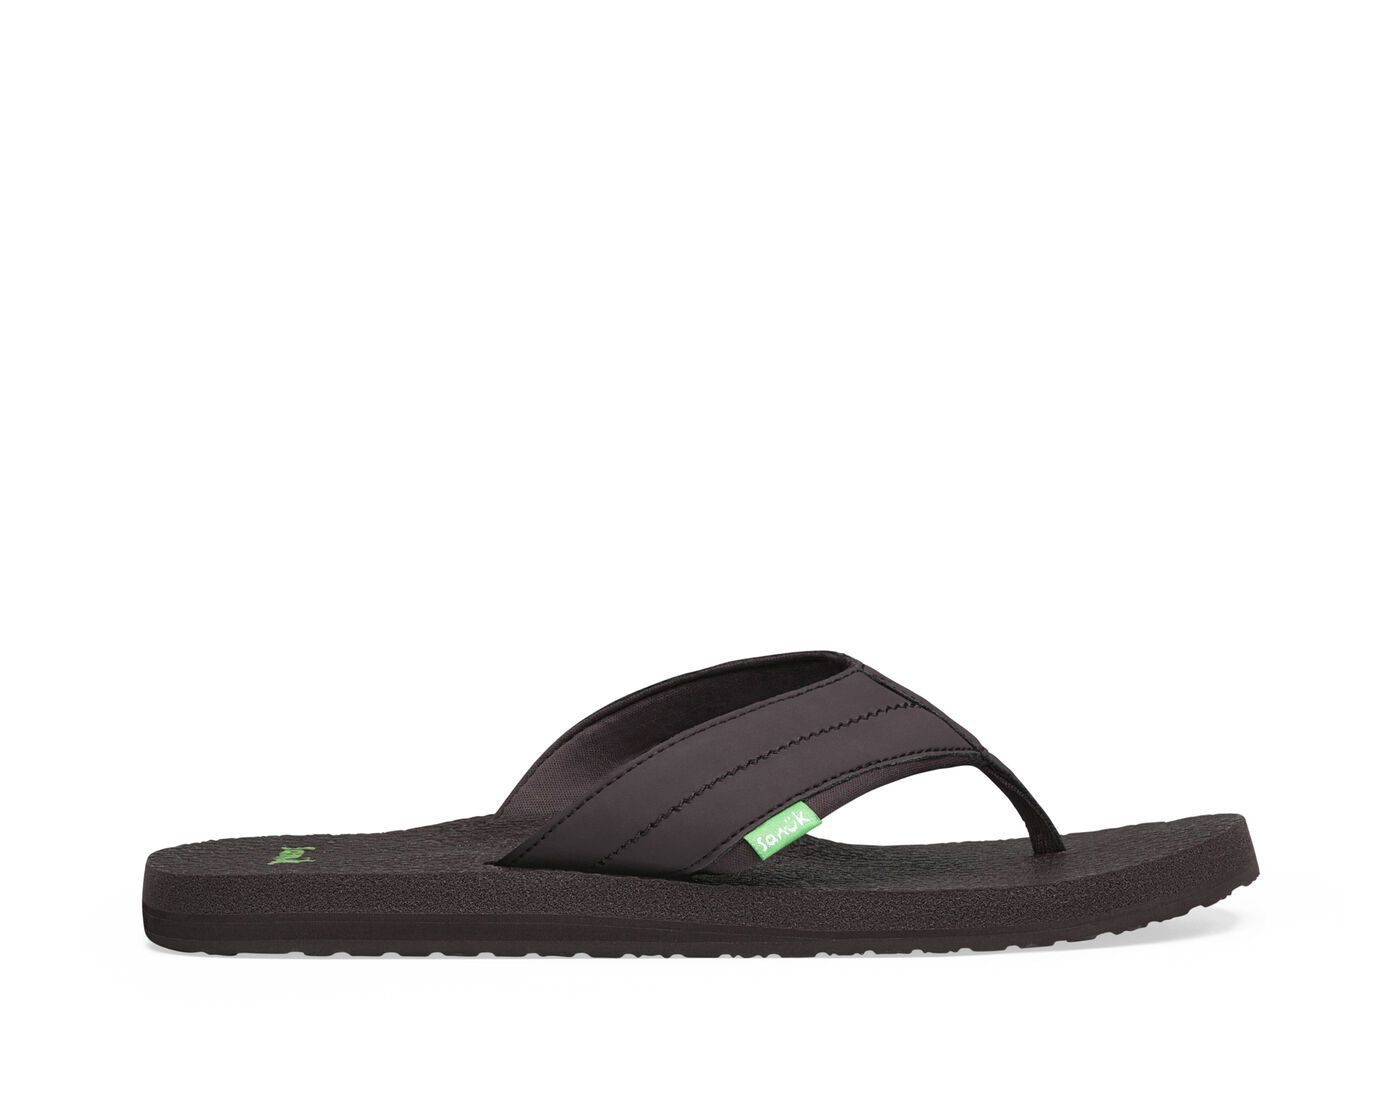 Sanuk Men's Ziggy Flip Flop Water-Resistant Sandals 1116734 